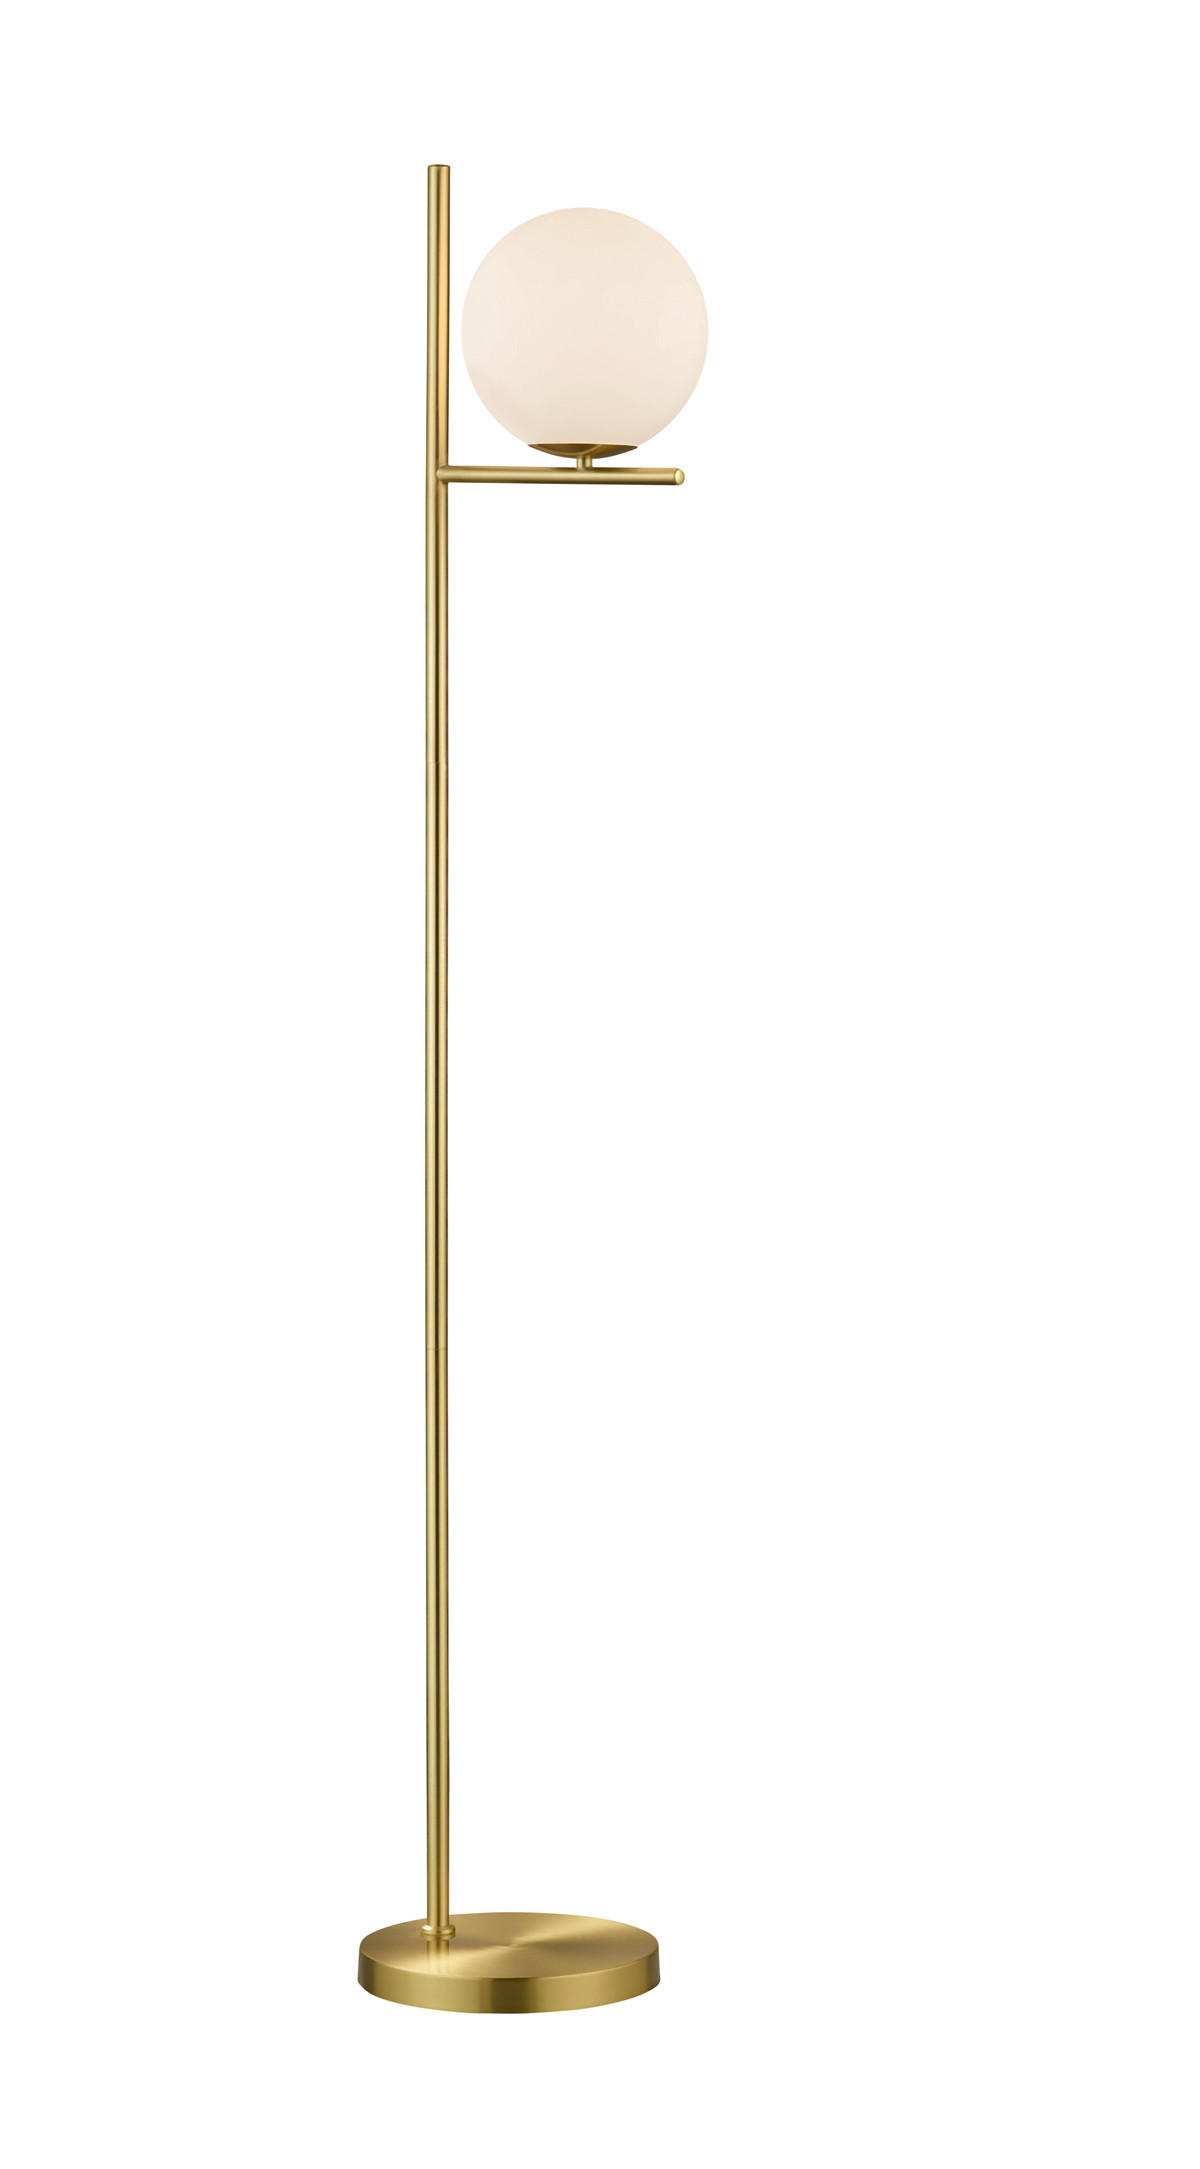 GOLVLAMPA 20/150 cm    - vit/mässingsfärgad, Klassisk, metall/glas (20/150cm)